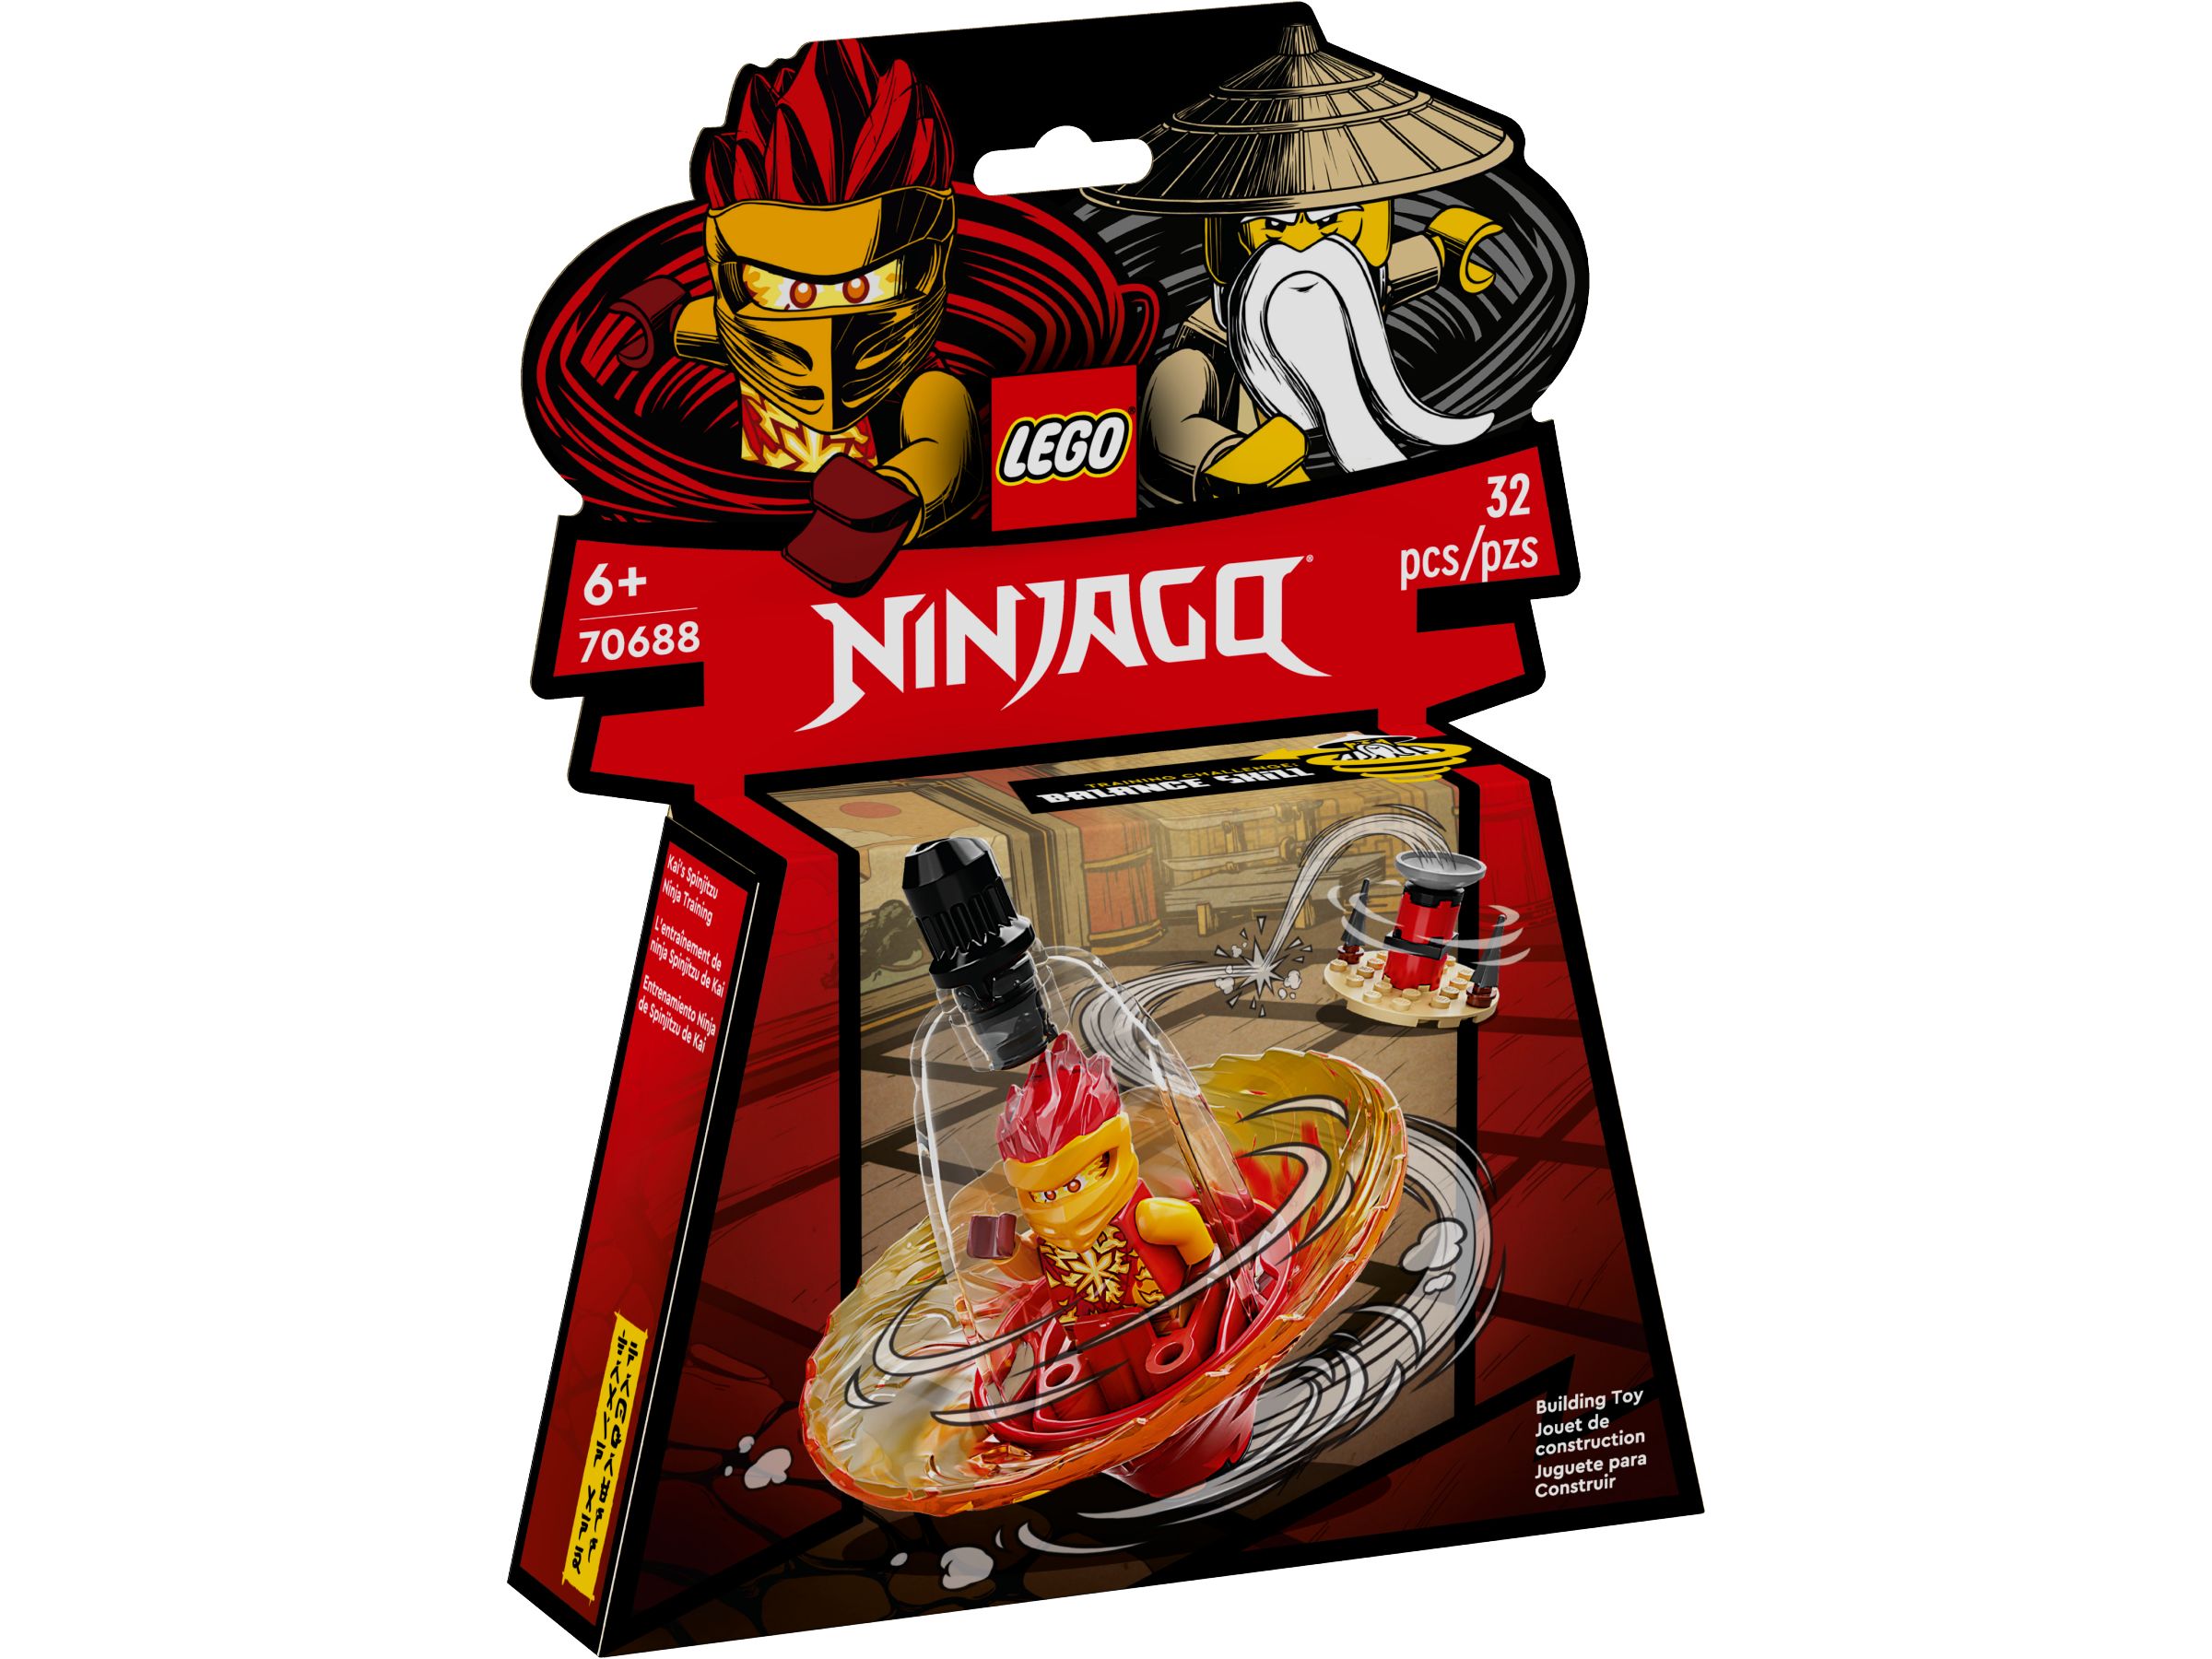 LEGO Ninjago 70688 Kais Spinjitzu-Ninjatraining LEGO_70688_alt1.jpg